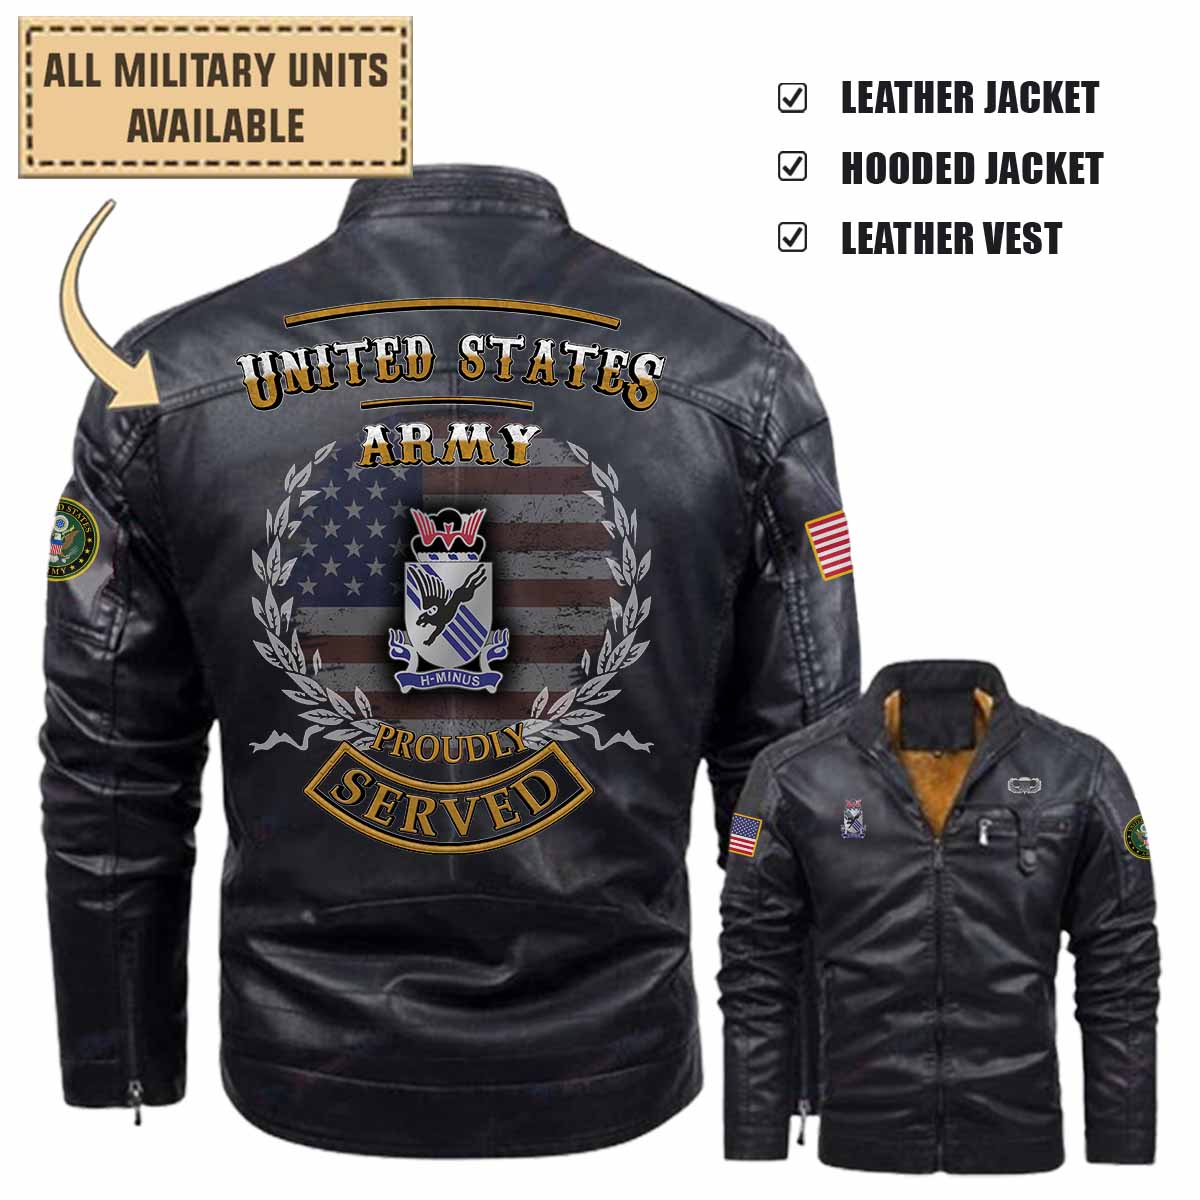 505th infantry regimentleather jacket and vest k44ih